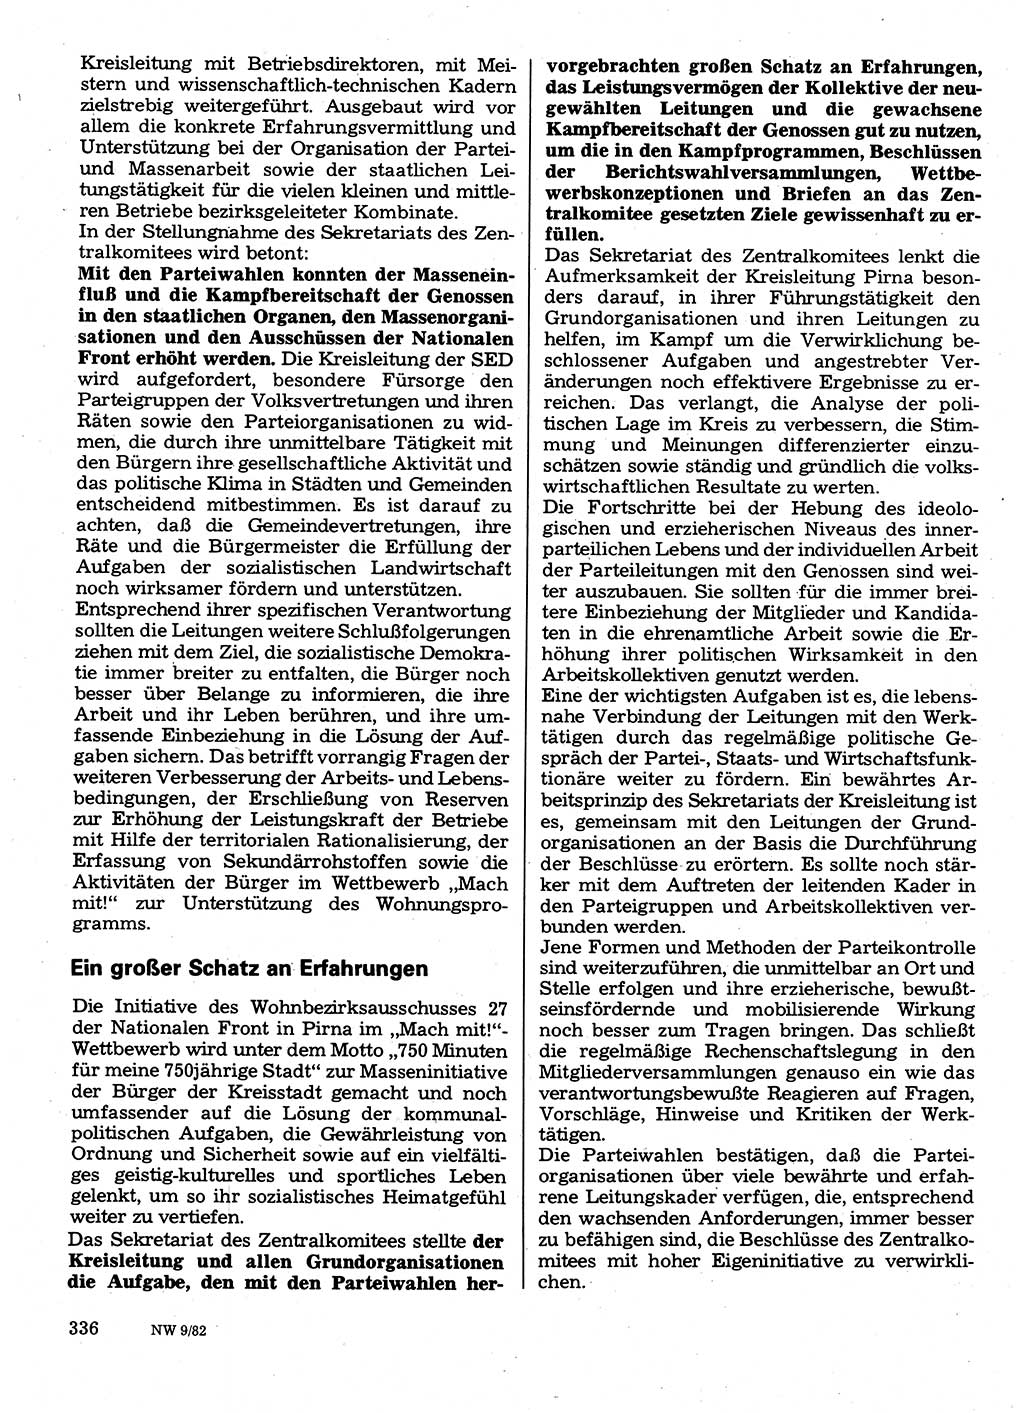 Neuer Weg (NW), Organ des Zentralkomitees (ZK) der SED (Sozialistische Einheitspartei Deutschlands) für Fragen des Parteilebens, 37. Jahrgang [Deutsche Demokratische Republik (DDR)] 1982, Seite 336 (NW ZK SED DDR 1982, S. 336)